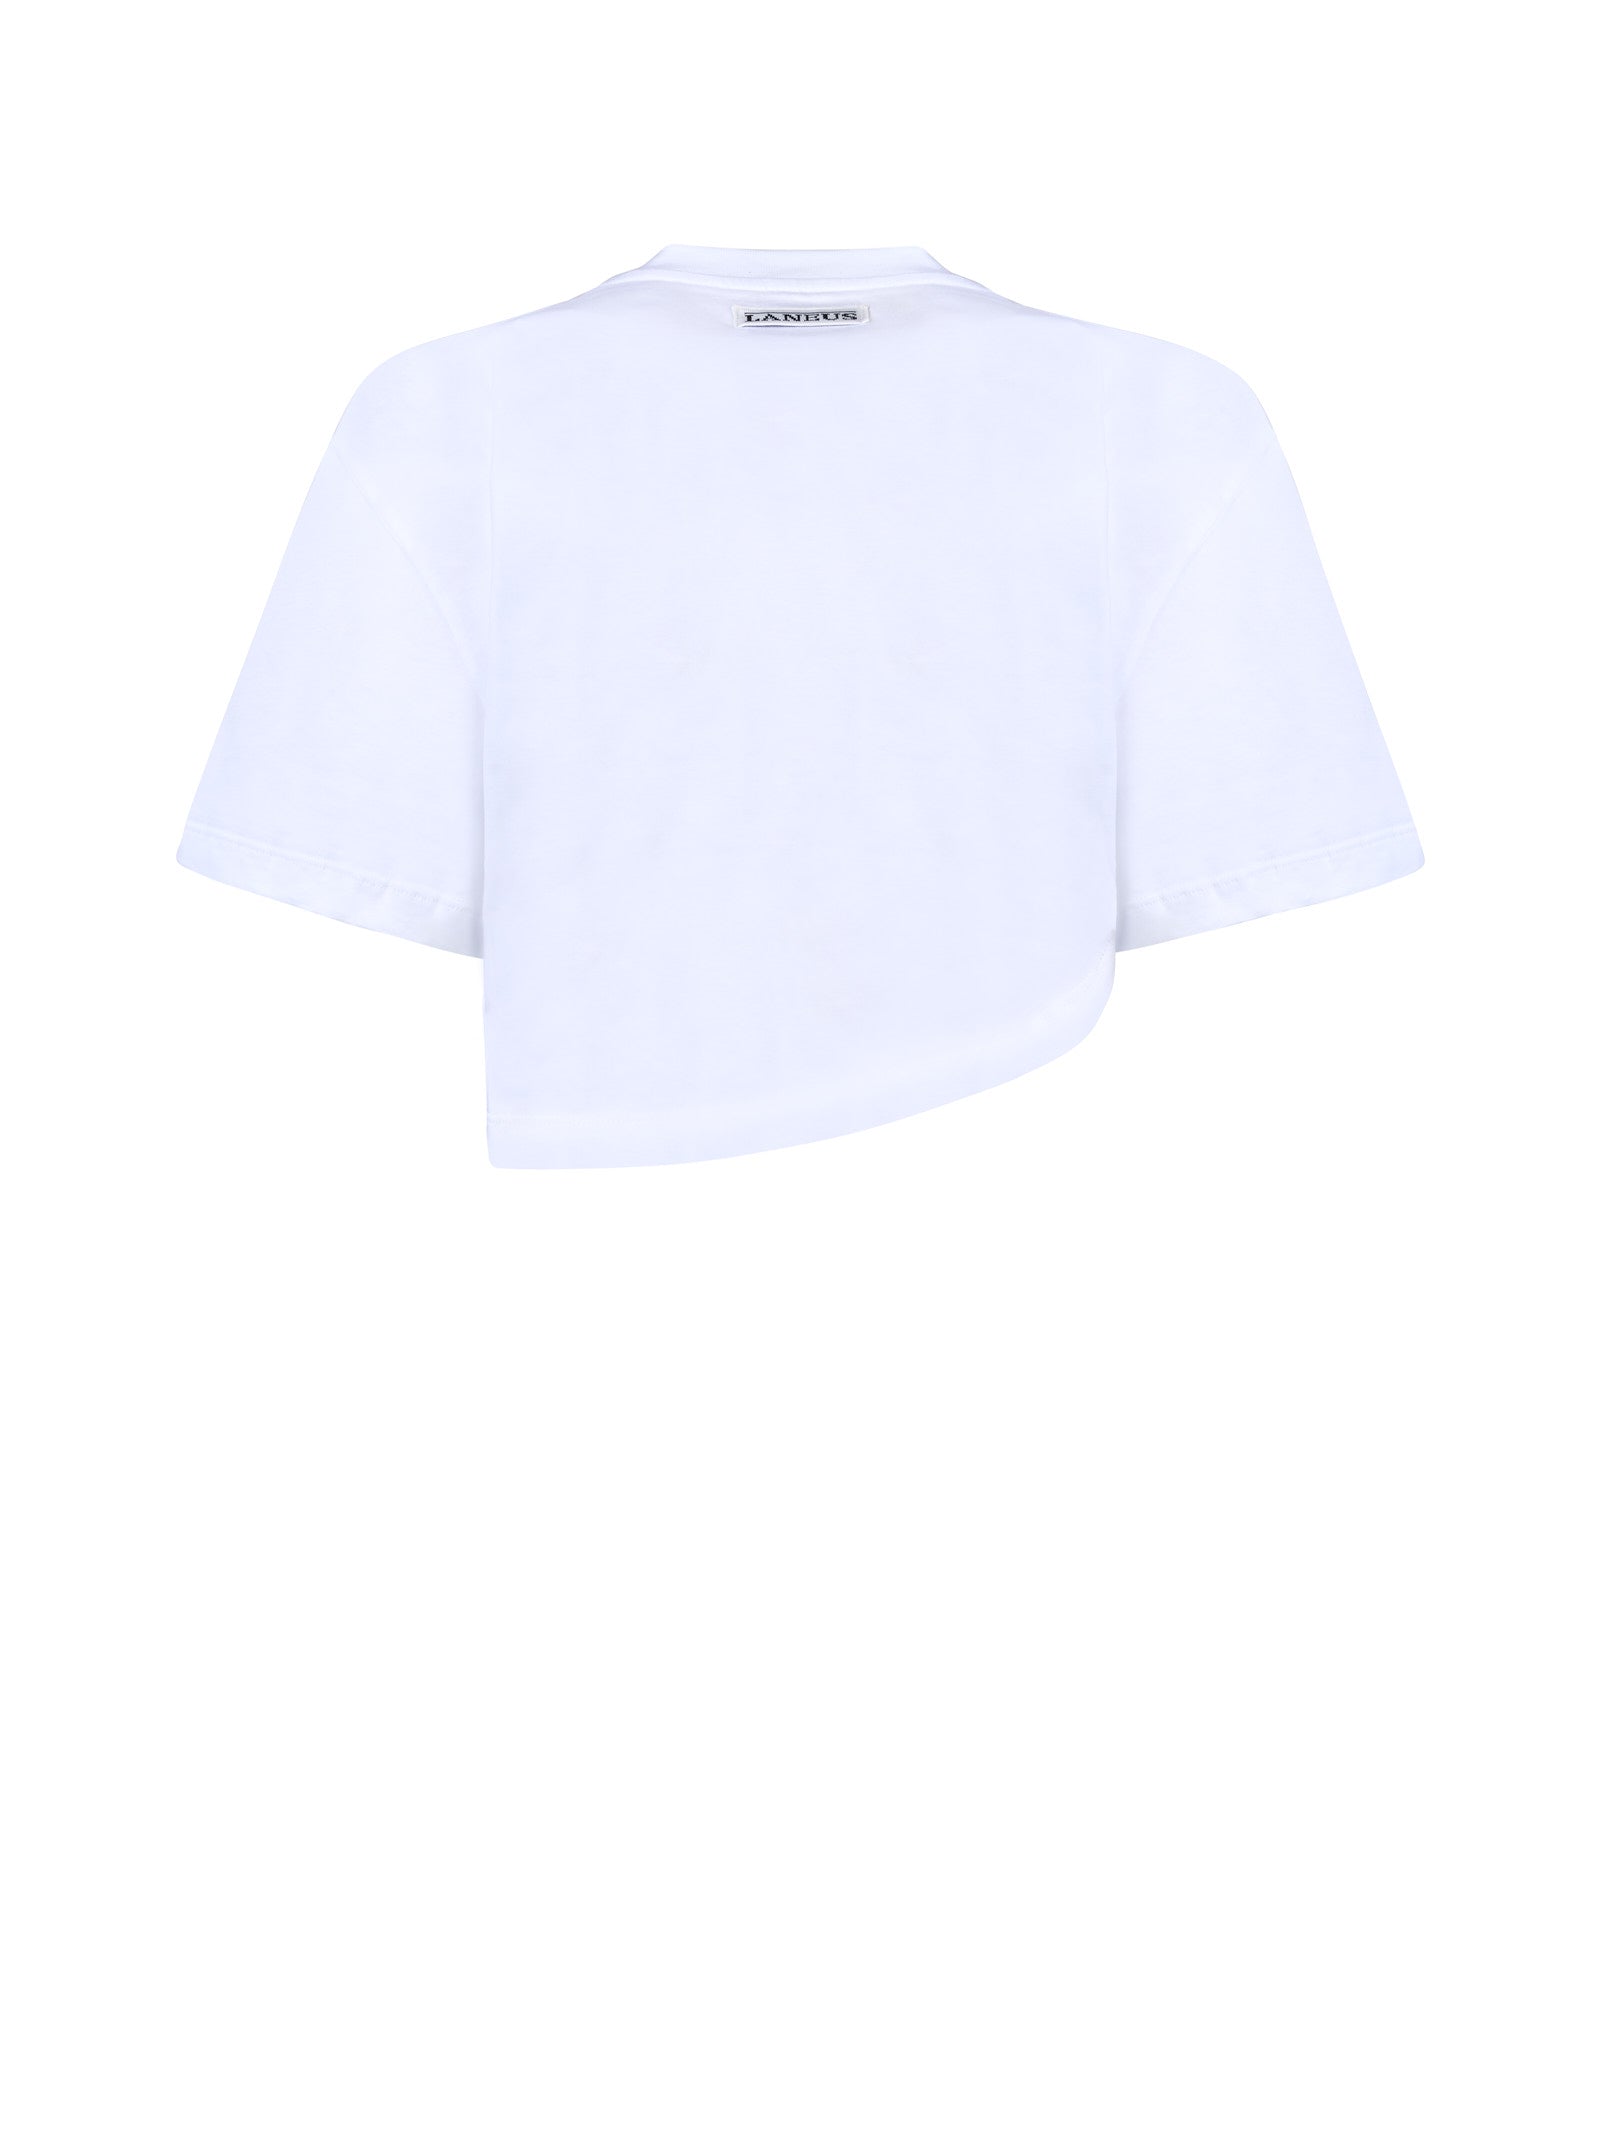 T-shirt LANEUS
Bianco